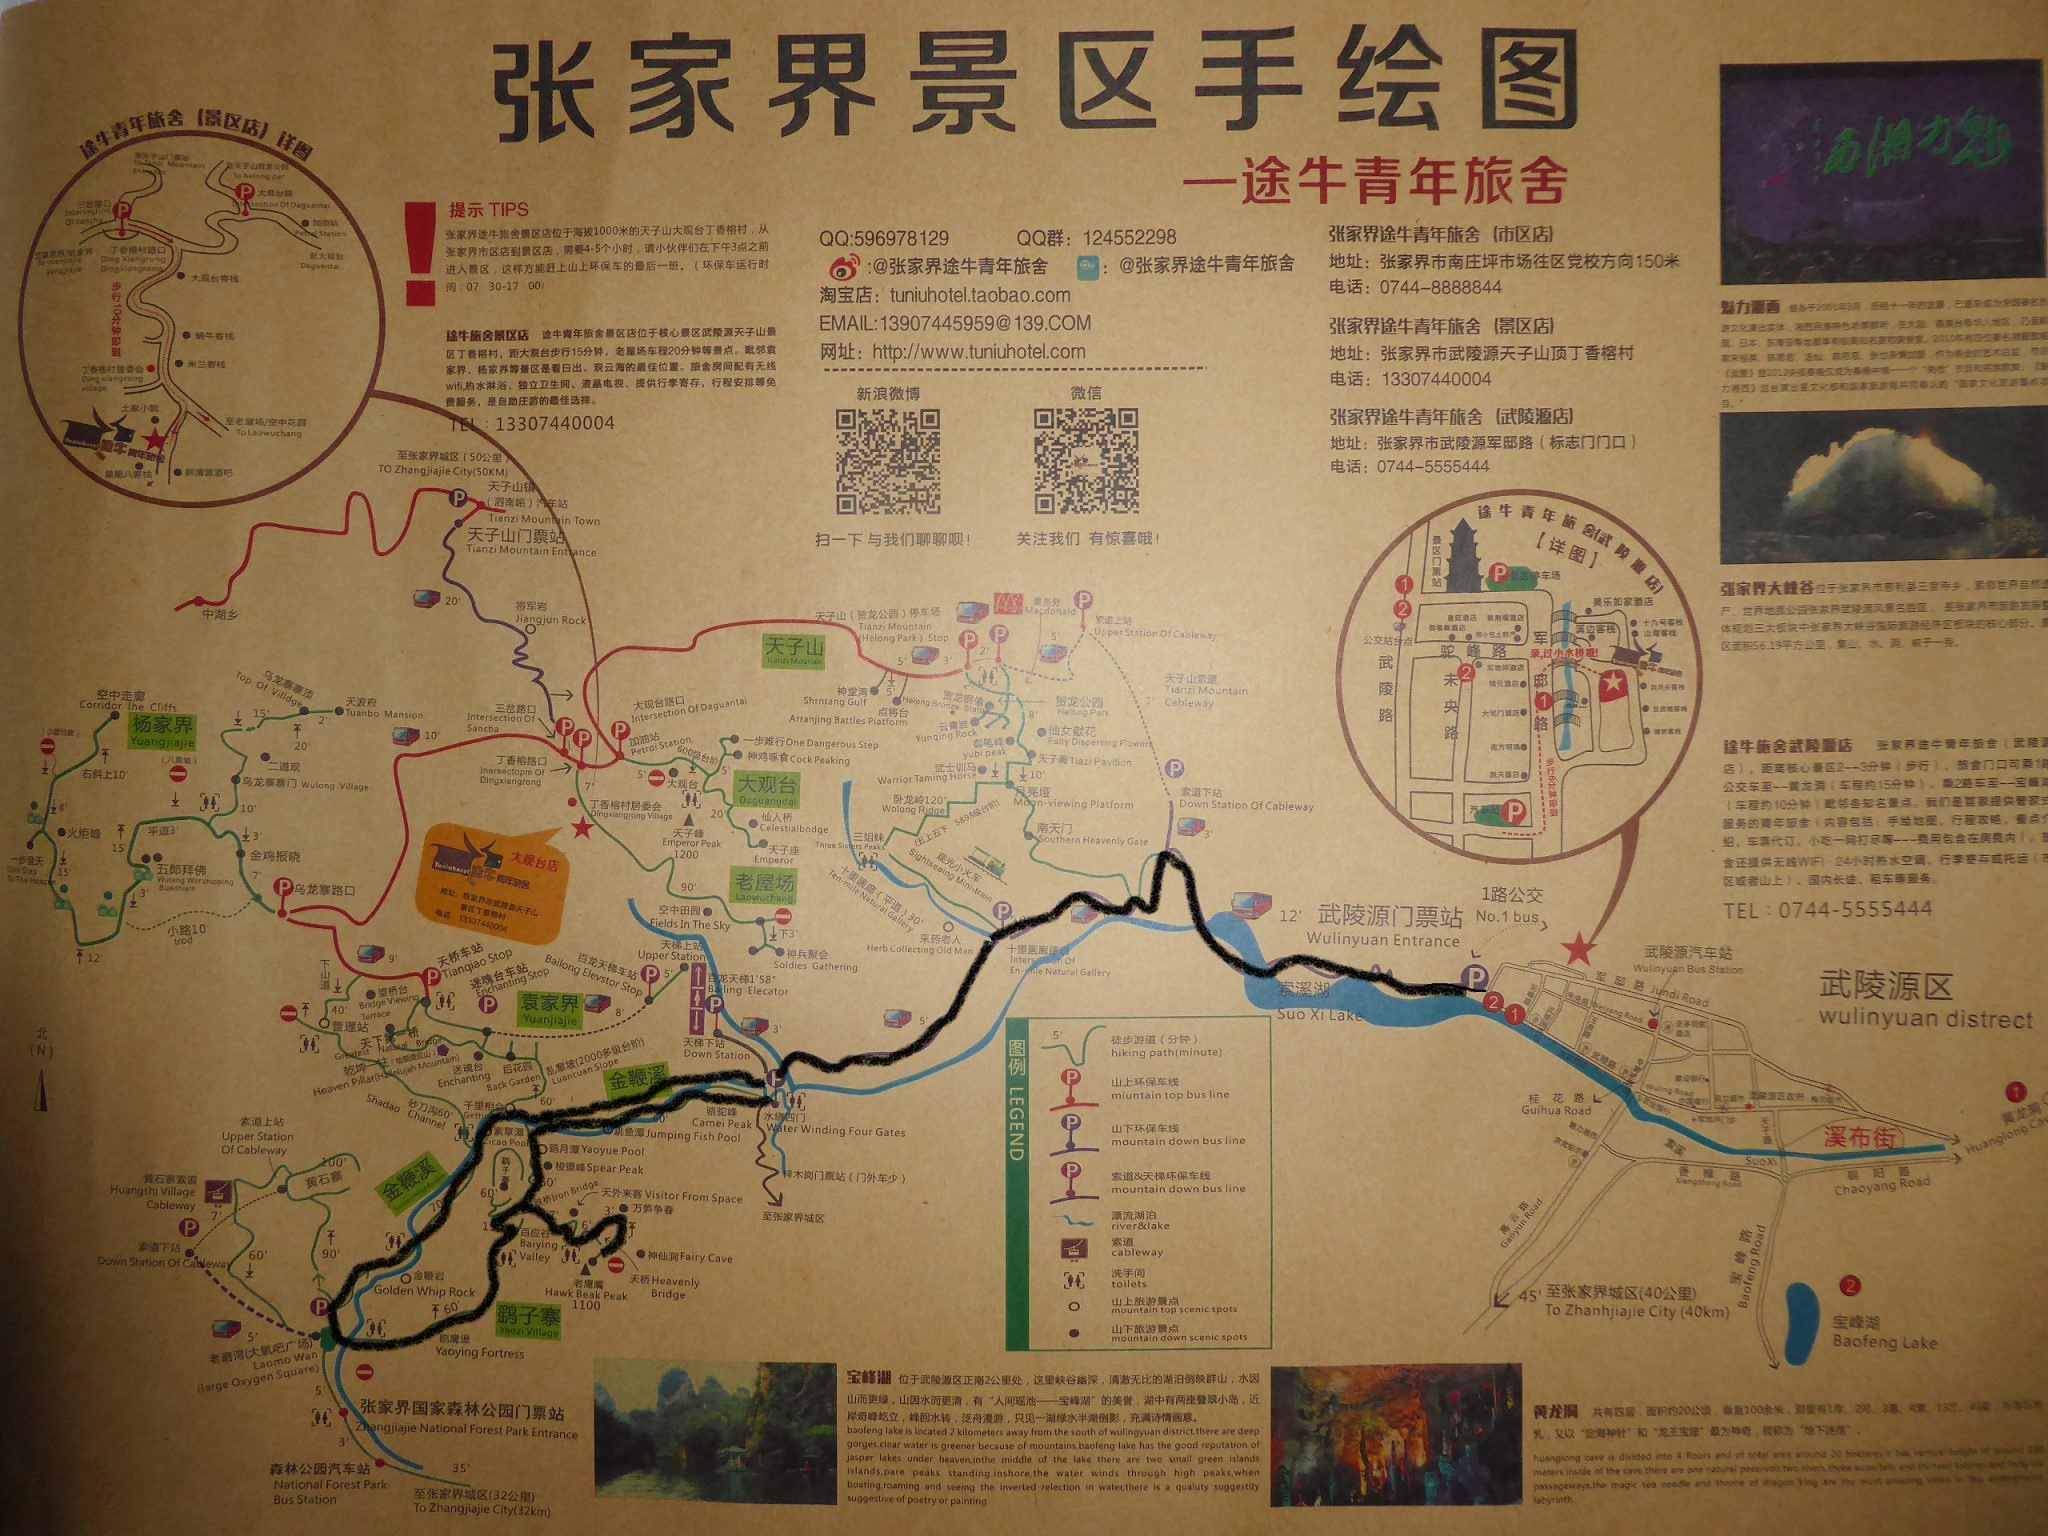 P.N. Zhangjiajie: Puente de Cristal, Paisaje -Hunan, China - Foro China, Taiwan y Mongolia